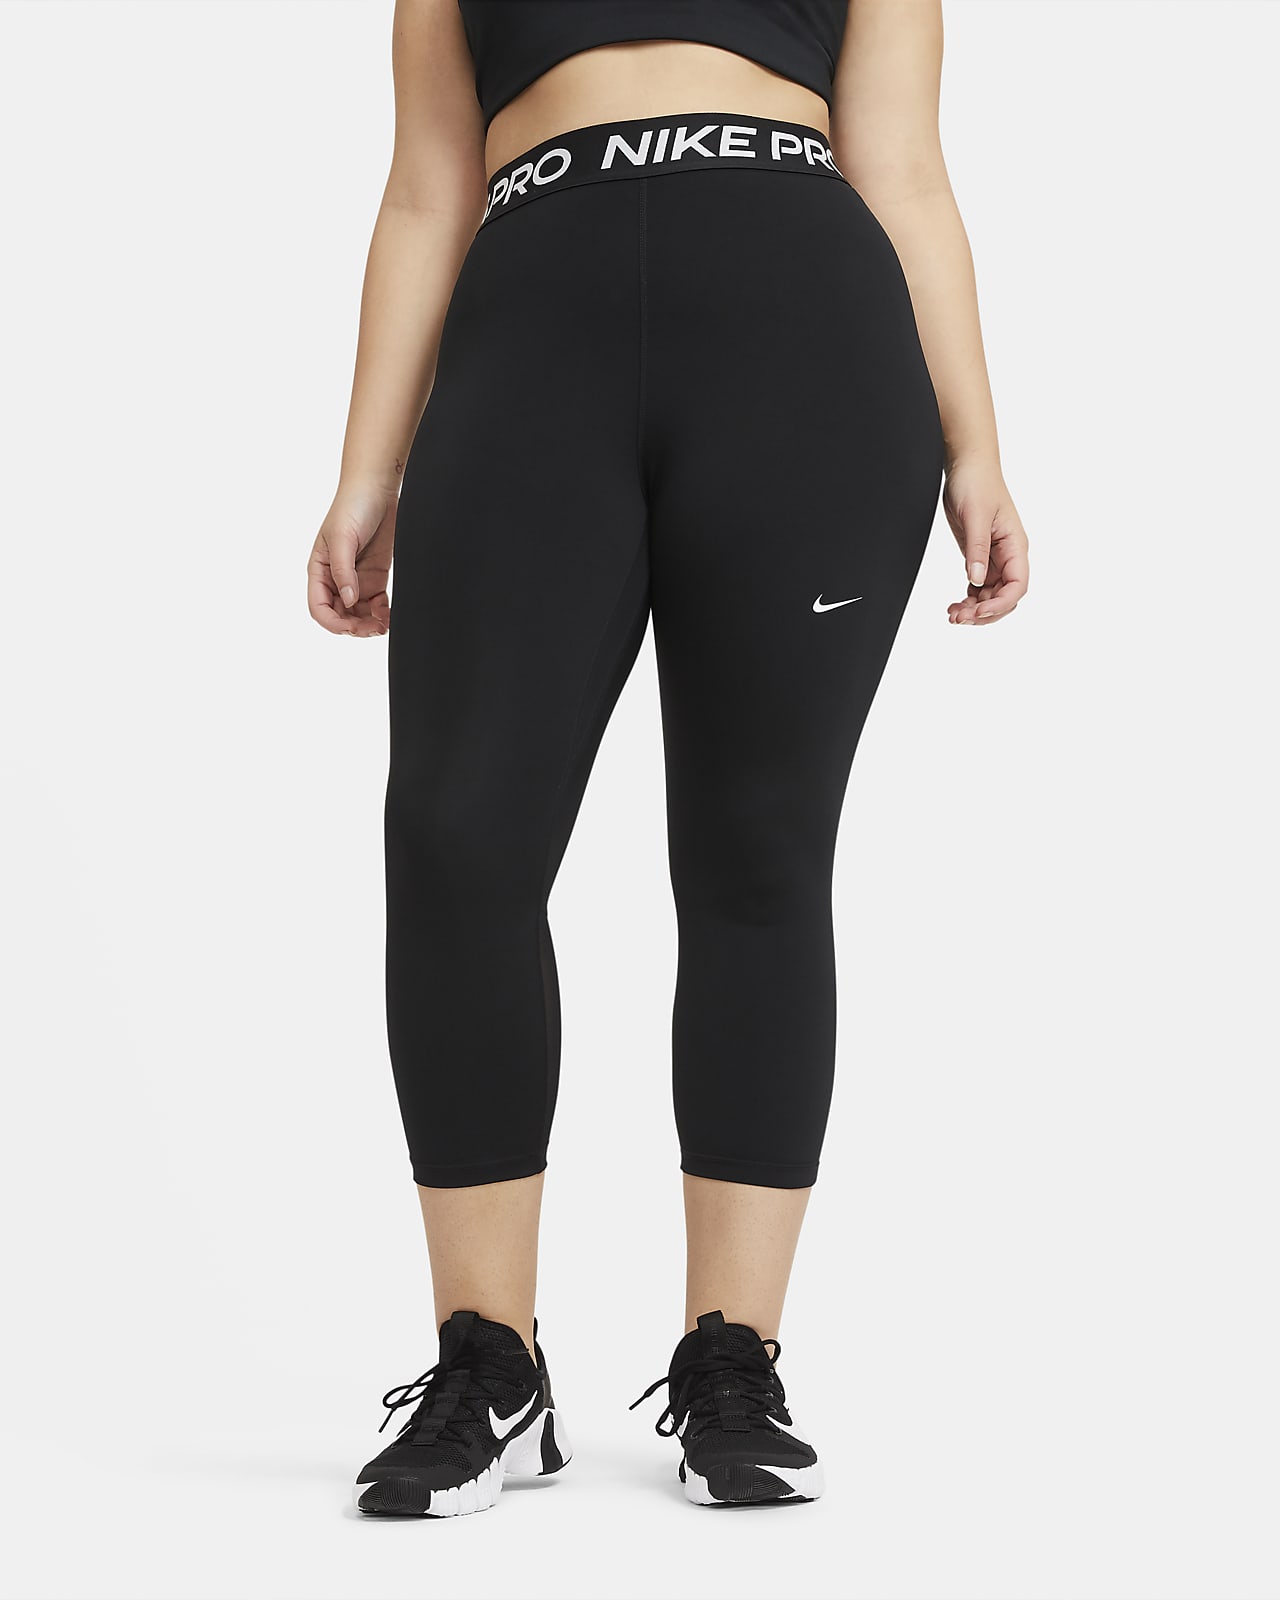 Nike, Pants & Jumpsuits, Womens Nike Pro Leggings Size Large L